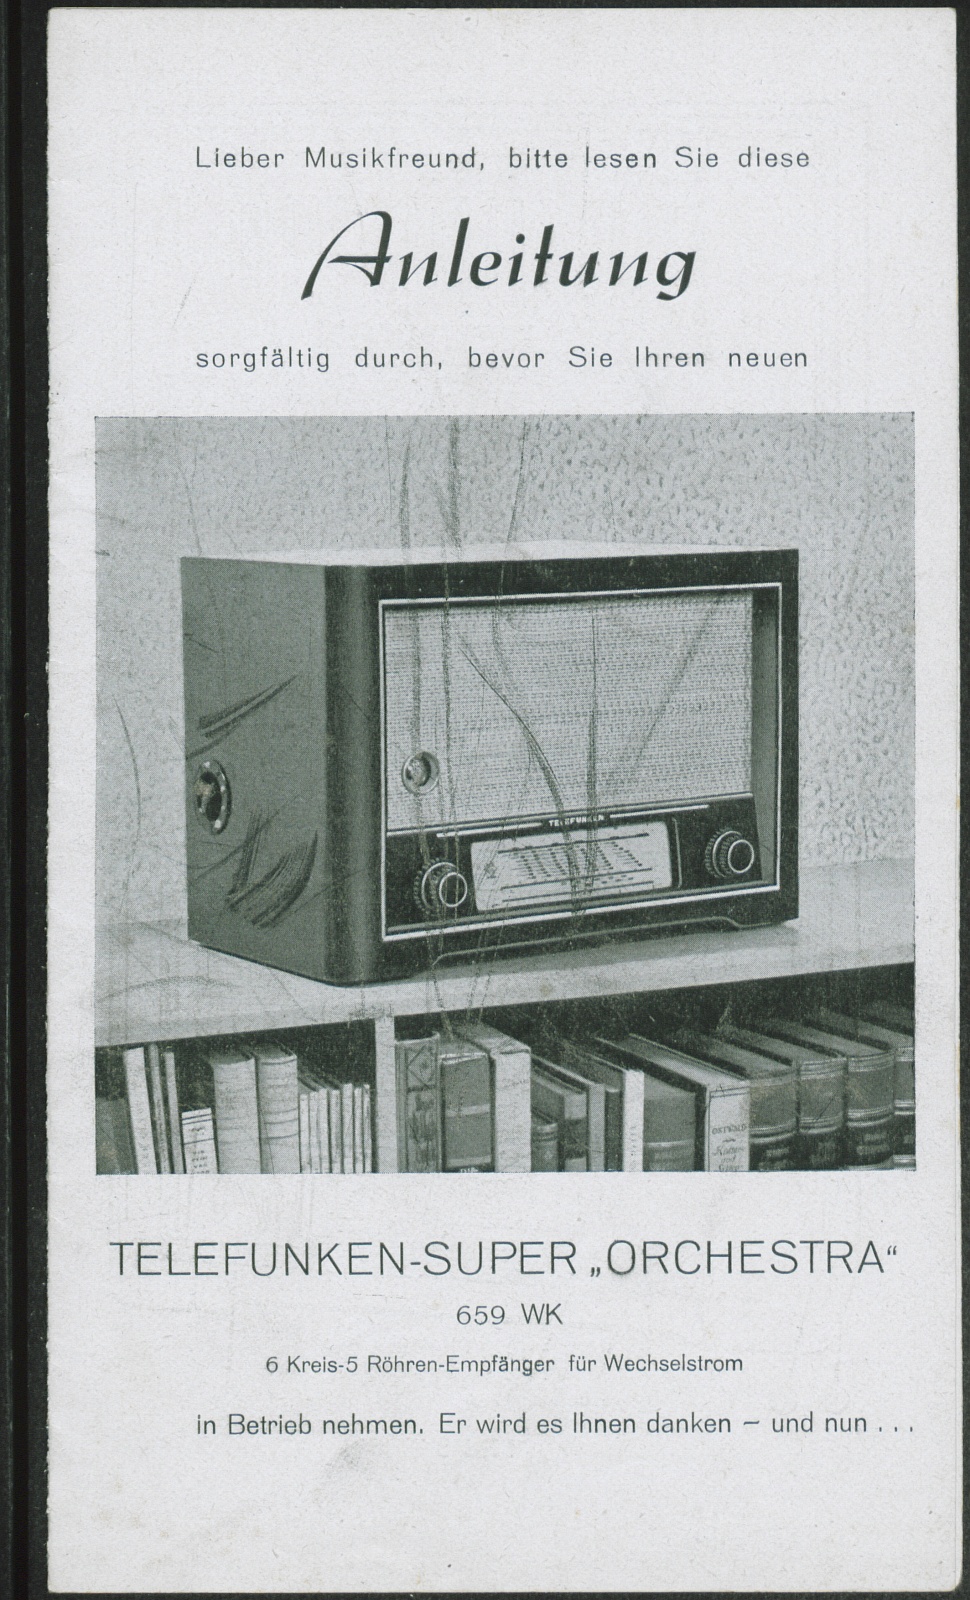 Bedienungsanleitung: Anleitung Telefunken Super Orchestra 659 WK (Stiftung Deutsches Technikmuseum Berlin CC0)